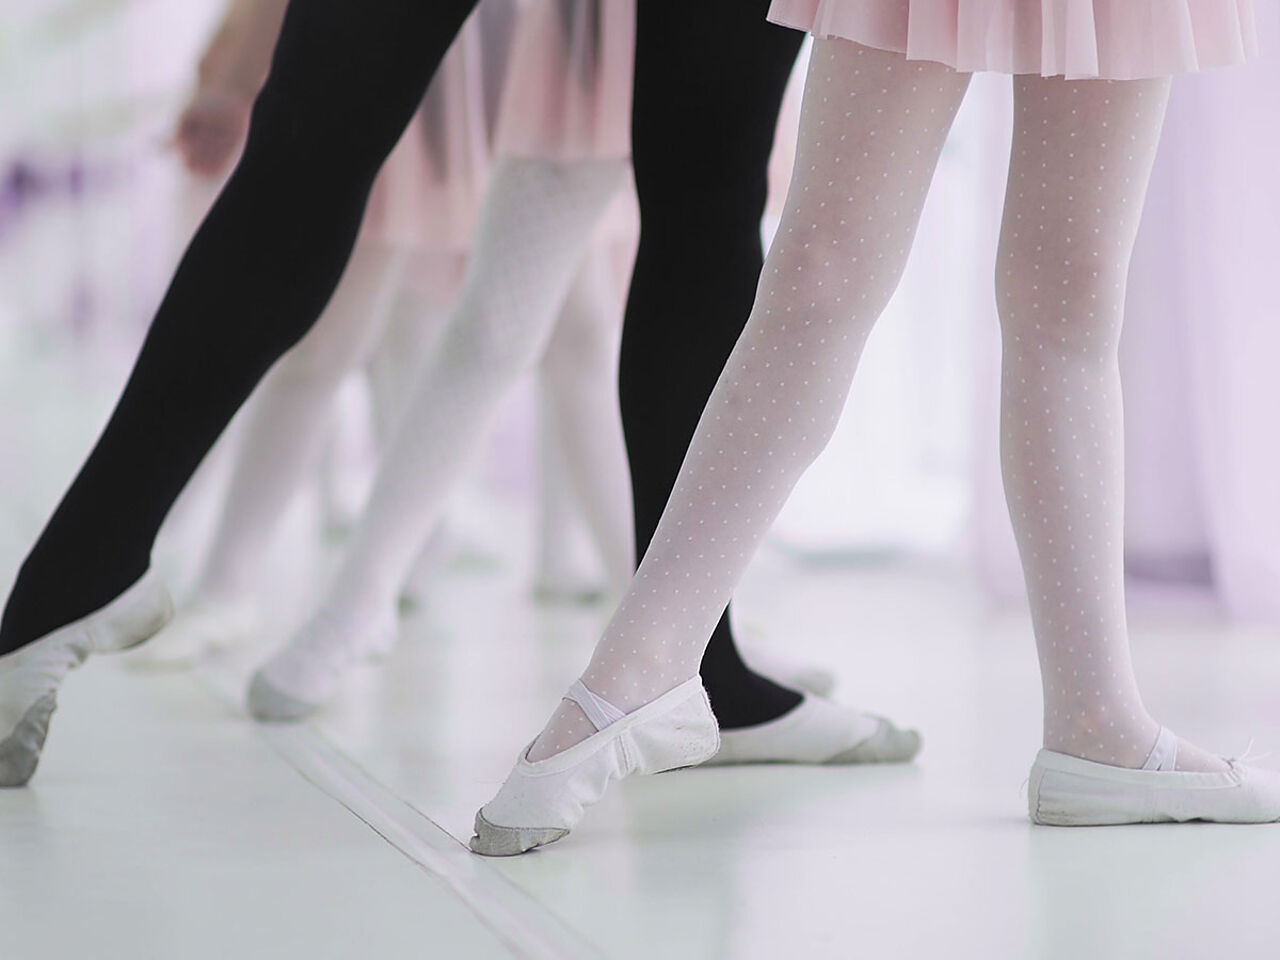 バレエの練習をしている女の子たちの足の画像